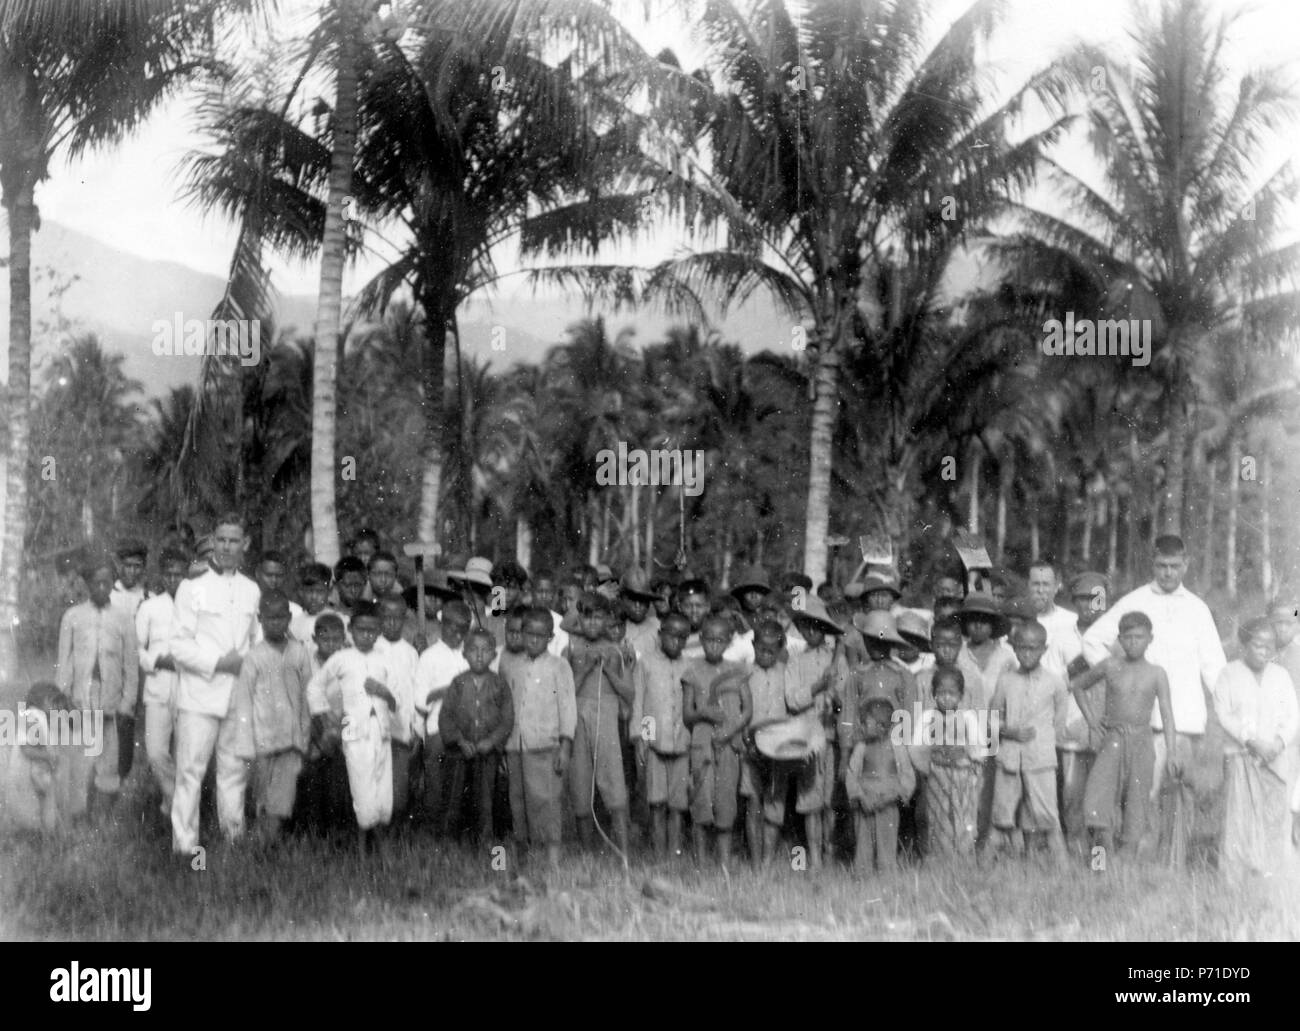 13 Frälsningsarméns skola och skolbarn. Sulawesi. Indonesien - SMVK - 010748 Stock Photo